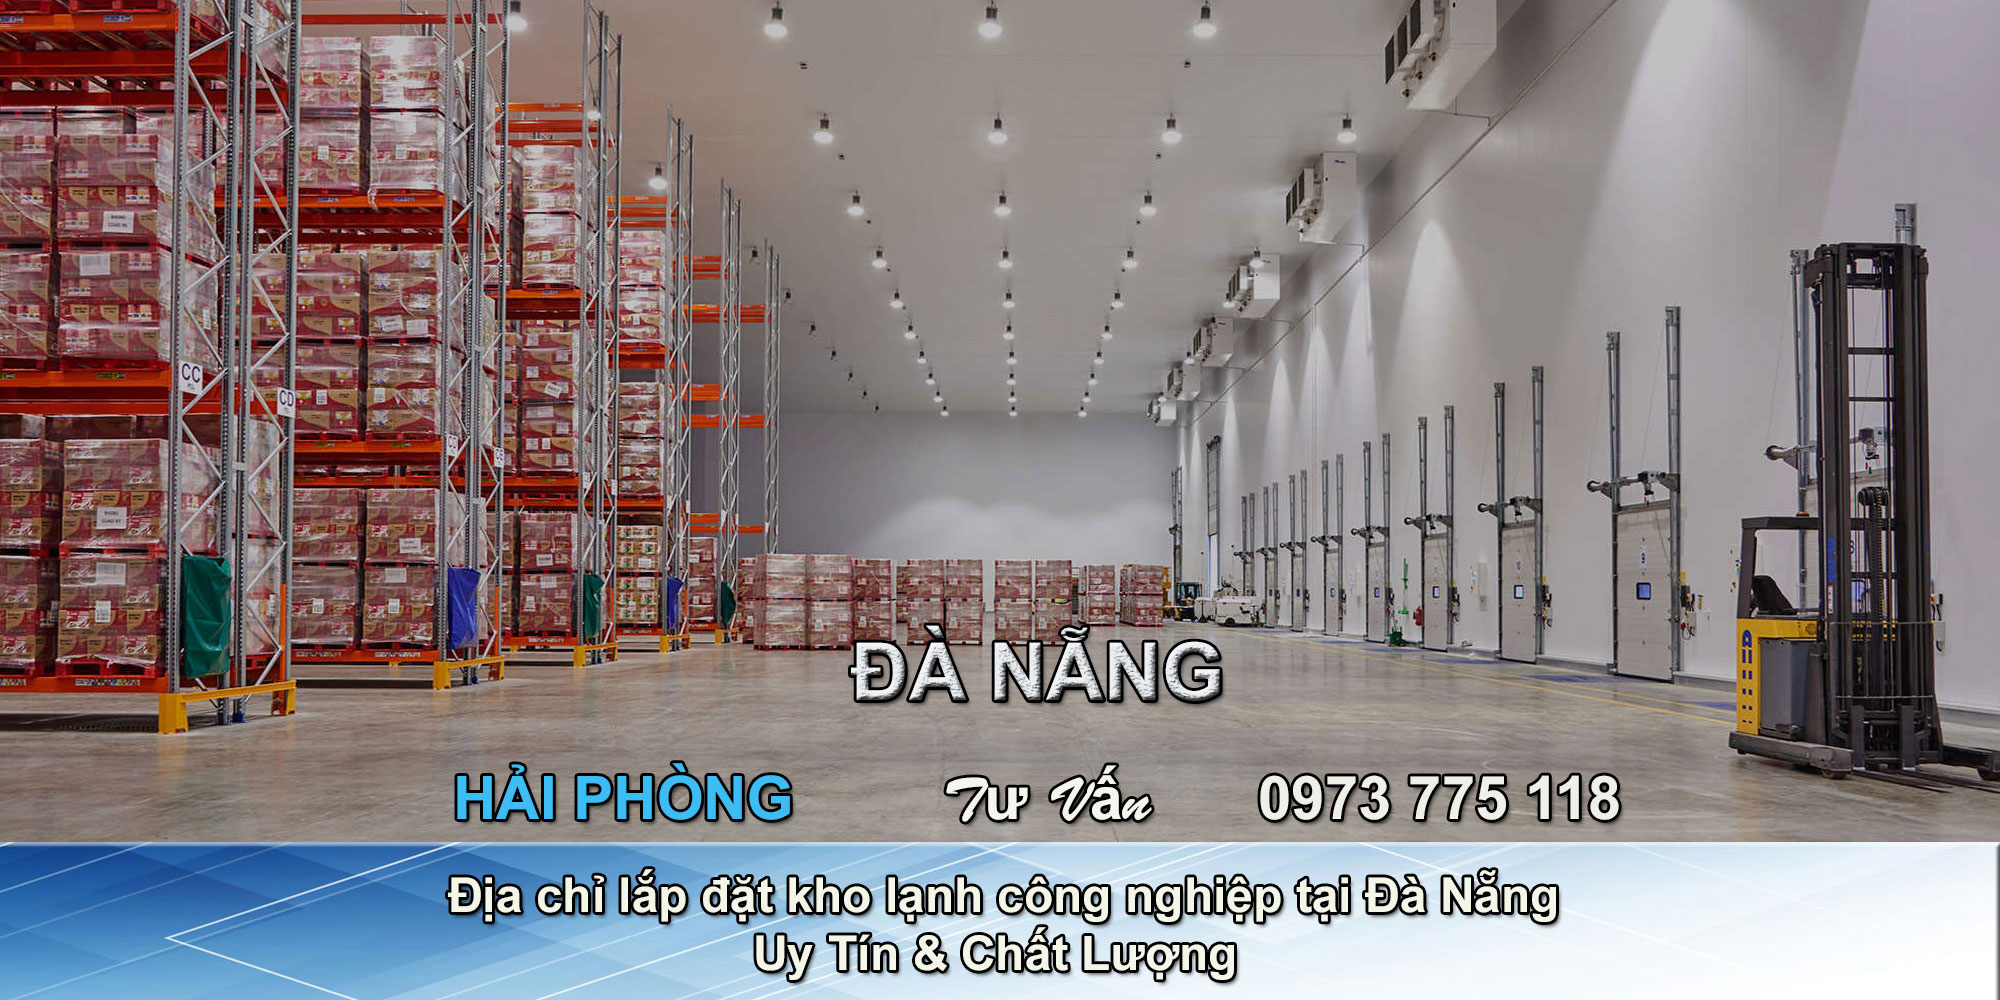 Địa chỉ lắp đặt kho lạnh công nghiệp tại Đà Nẵng uy tín chất lượng